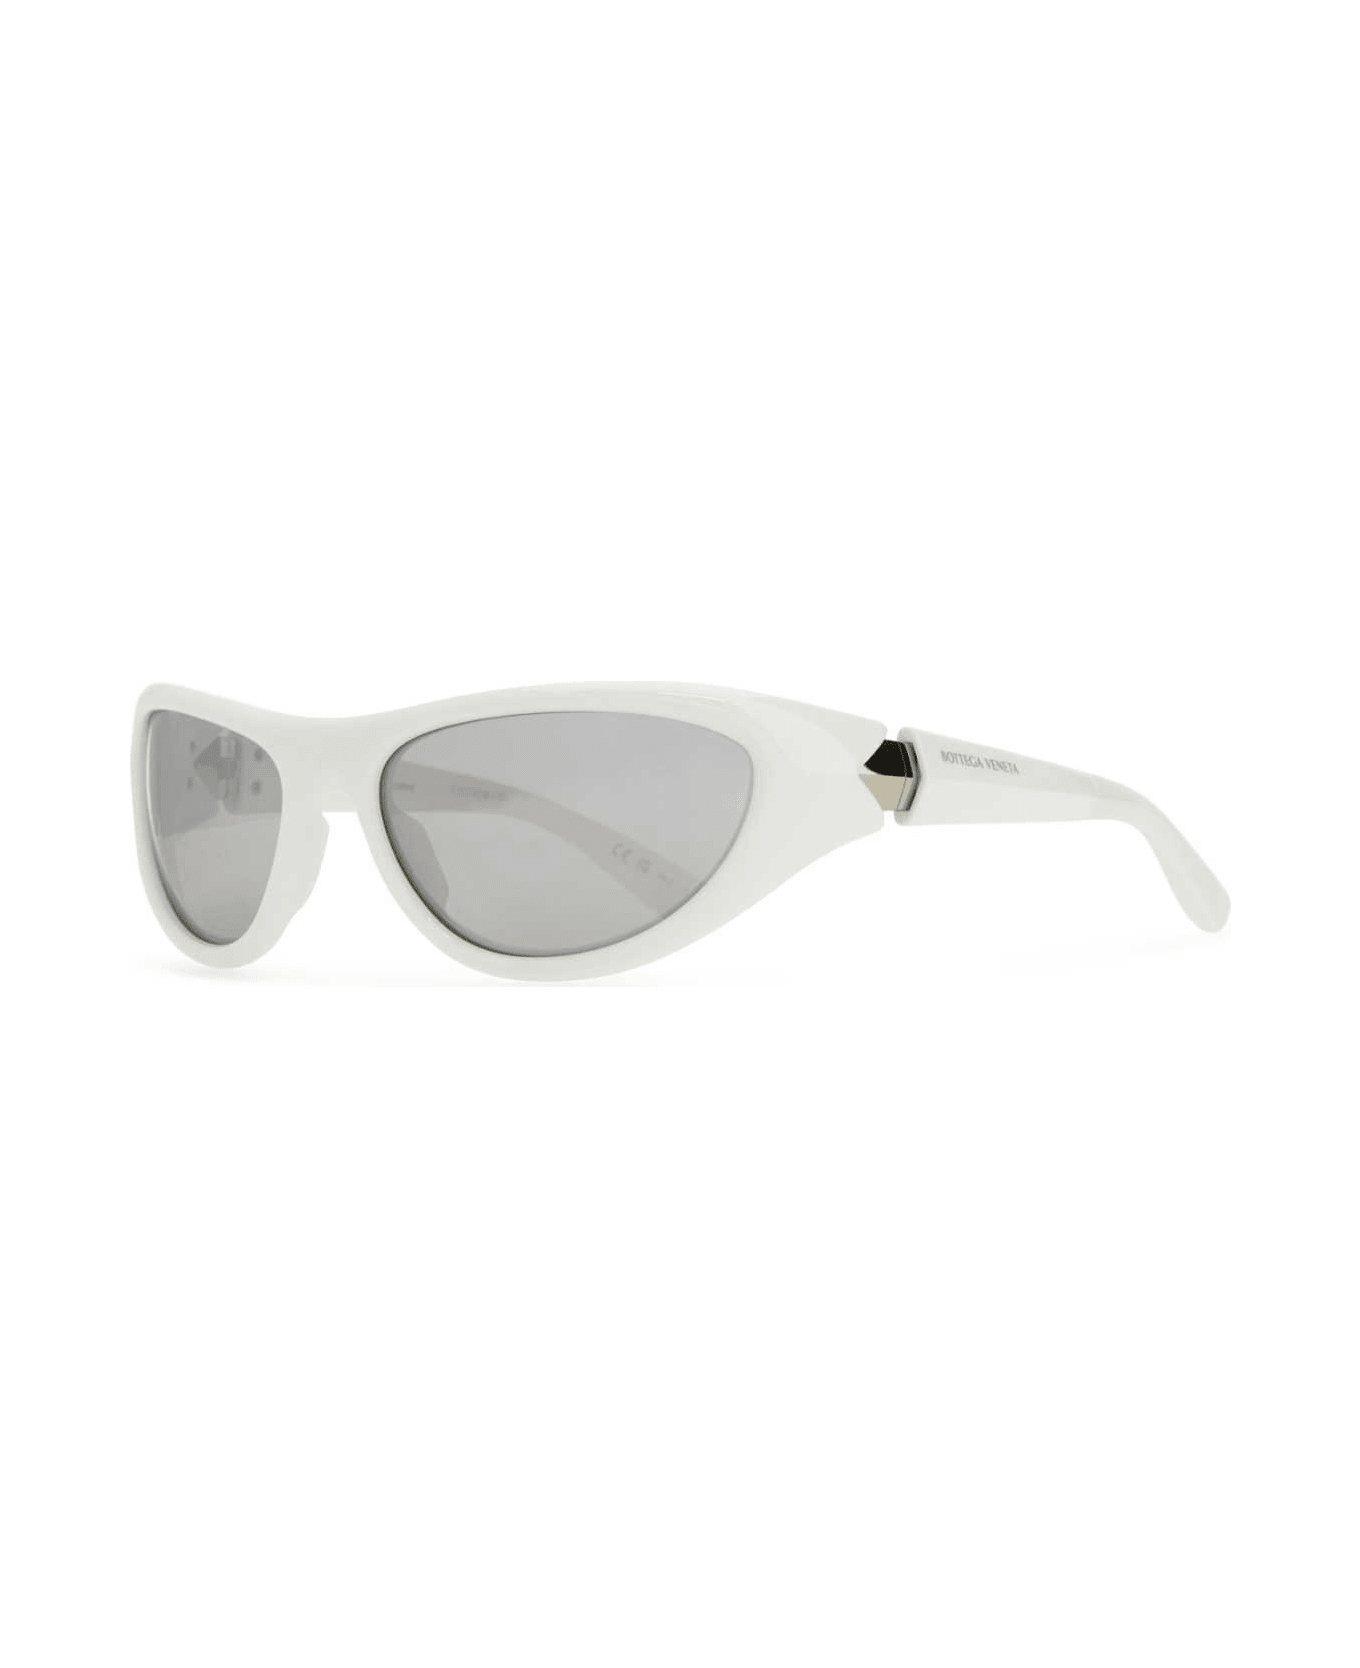 Bottega Veneta White Acetate Sunglasses - WHITESILVER